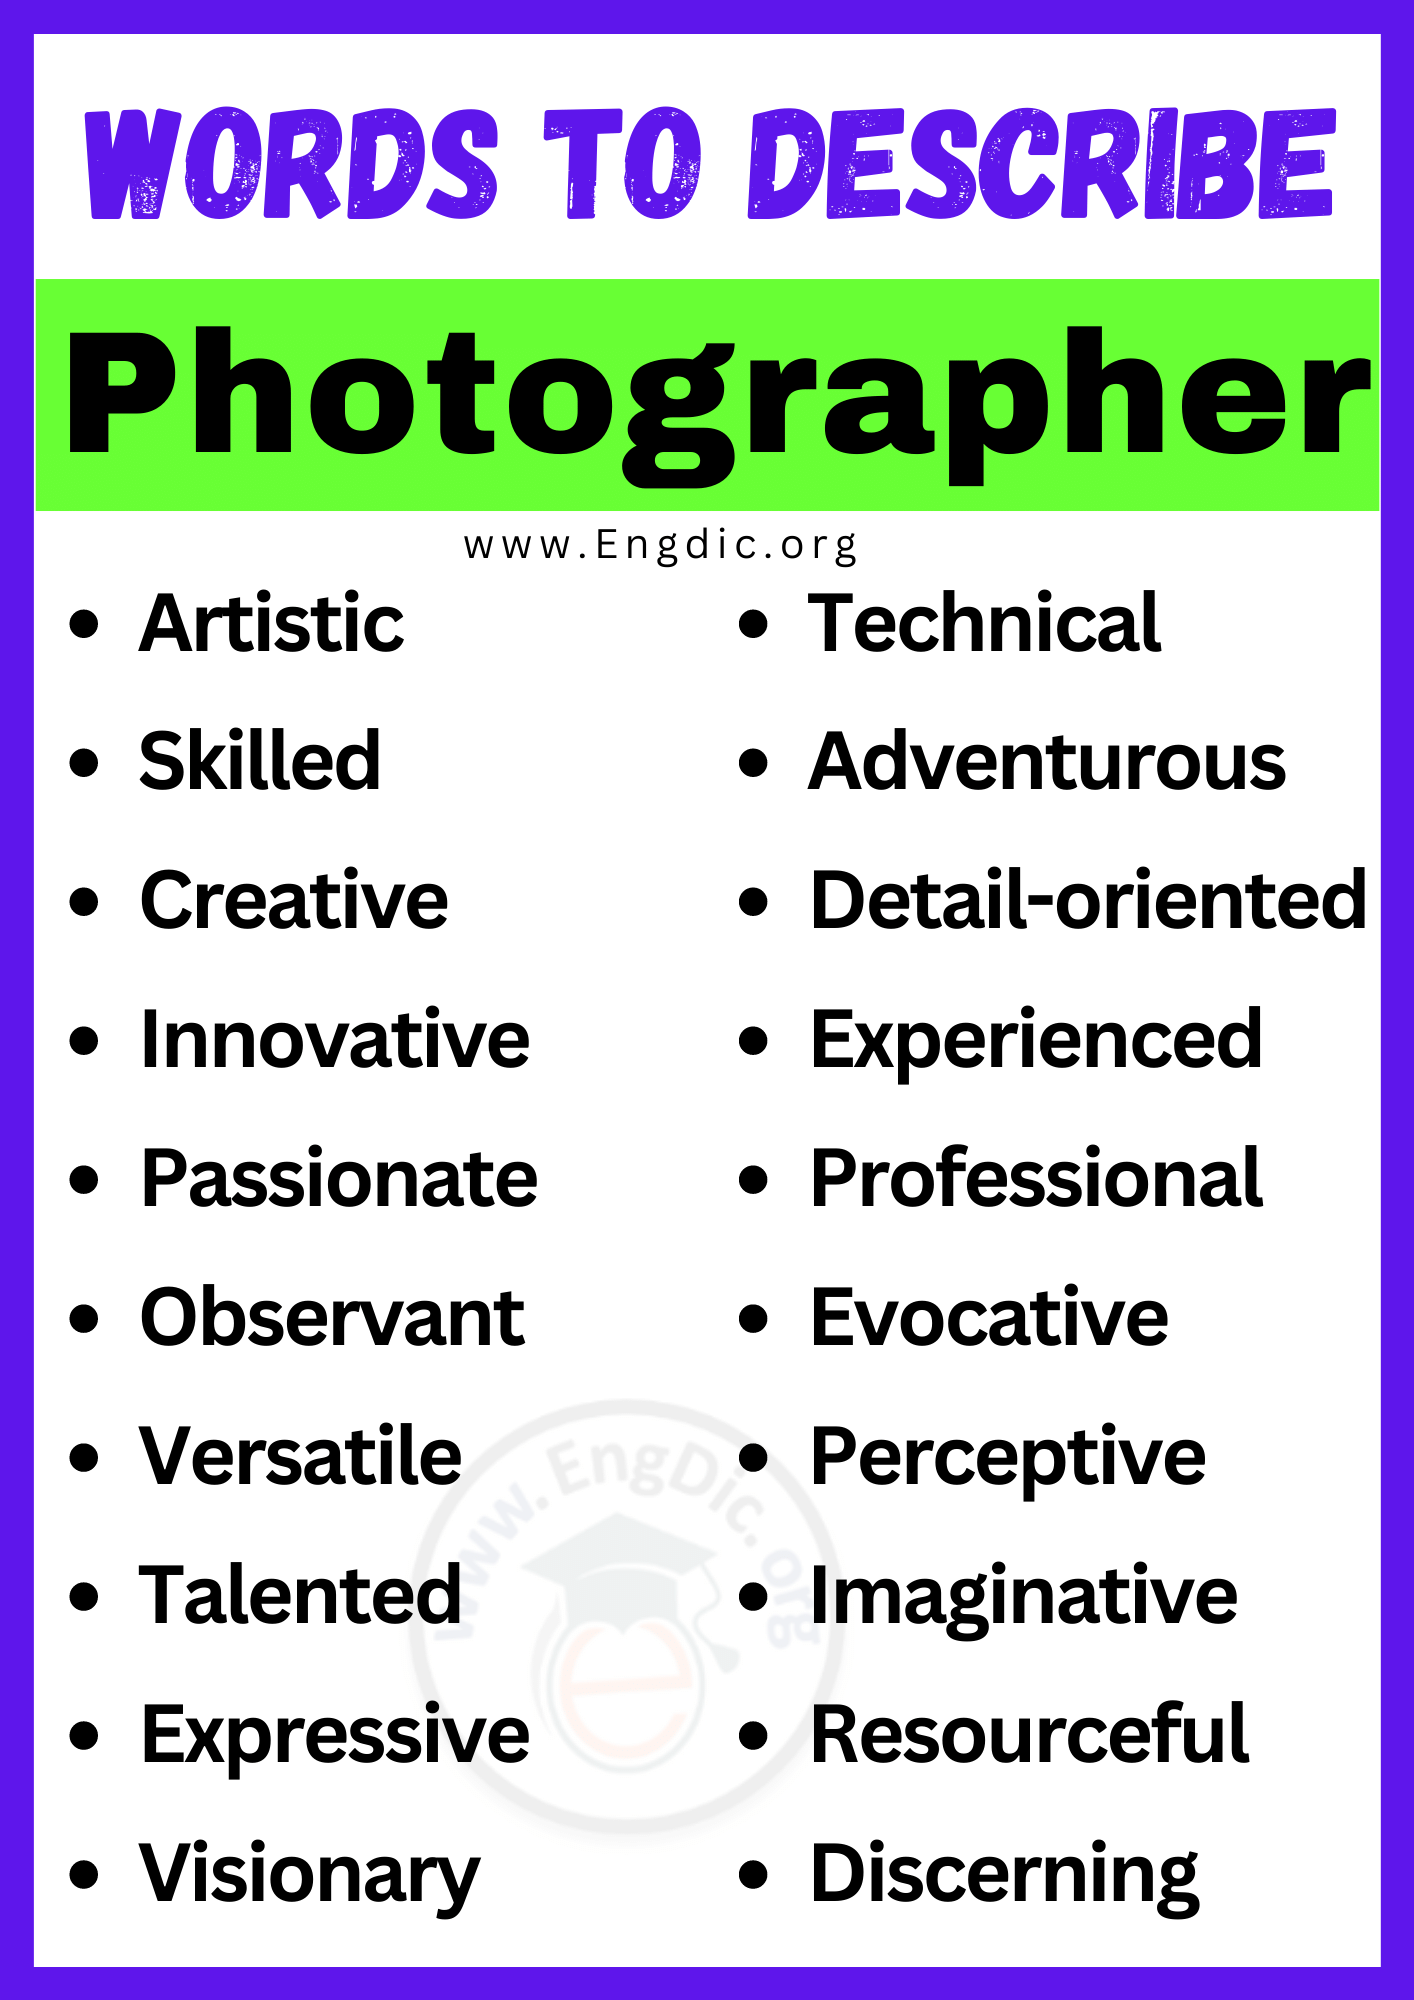 Words to Describe Photographer